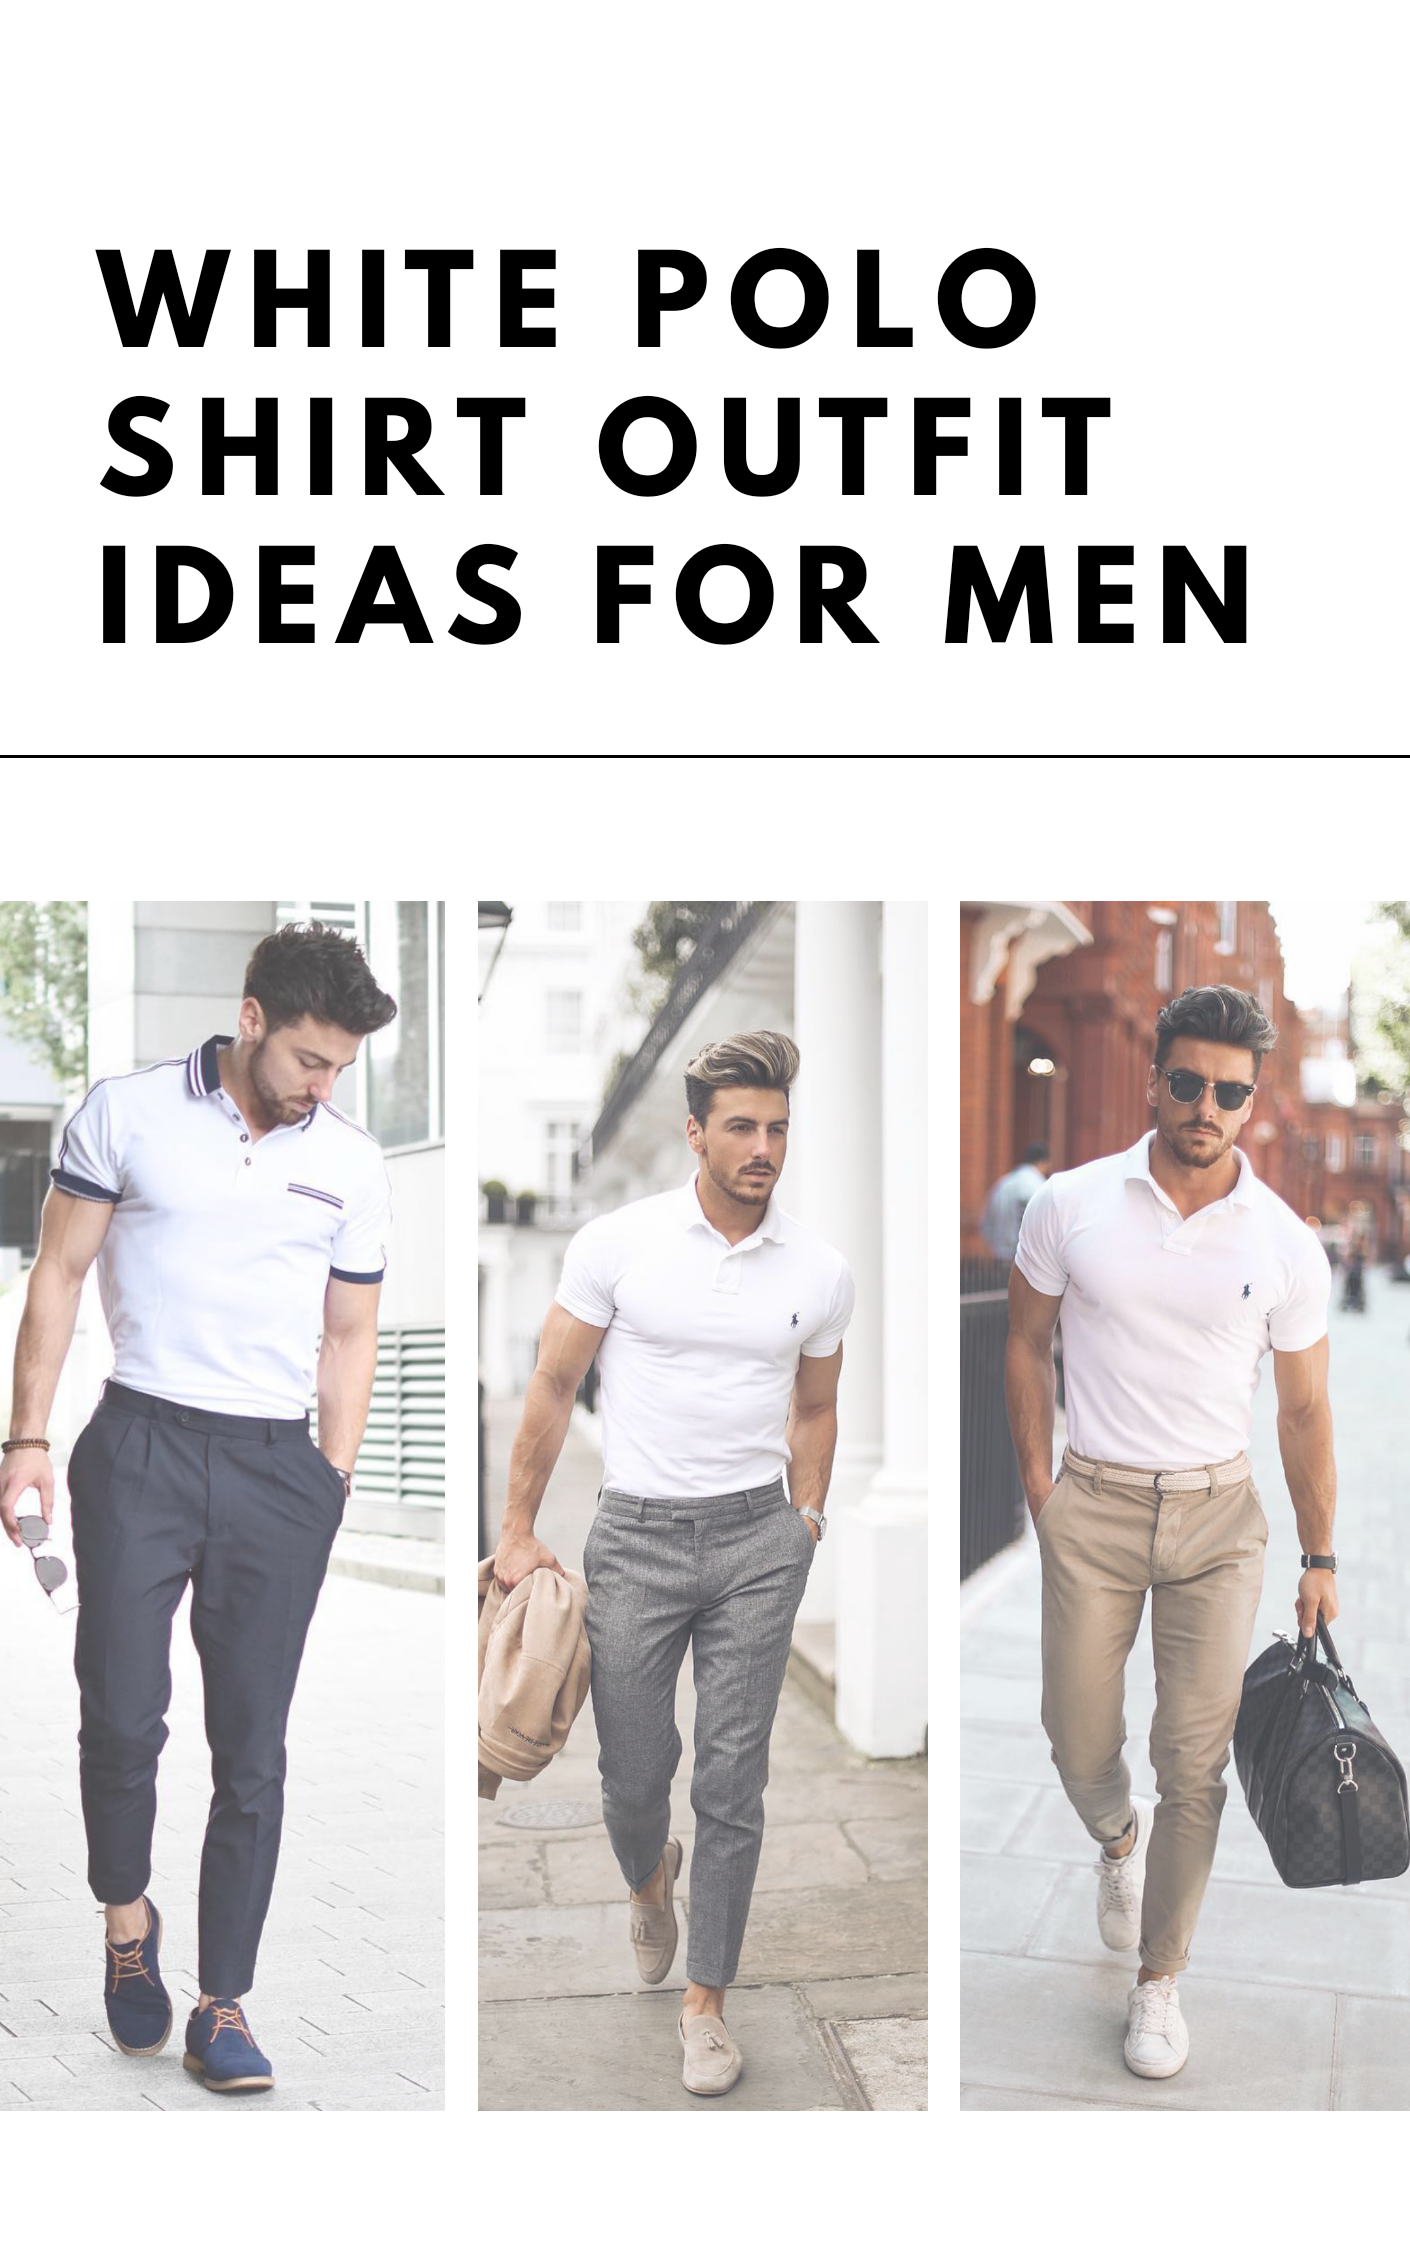 White Polo Shirt Outfit Ideas For Men #poloshirt #shirt #outfitideas #mensfashion #streetstyle 